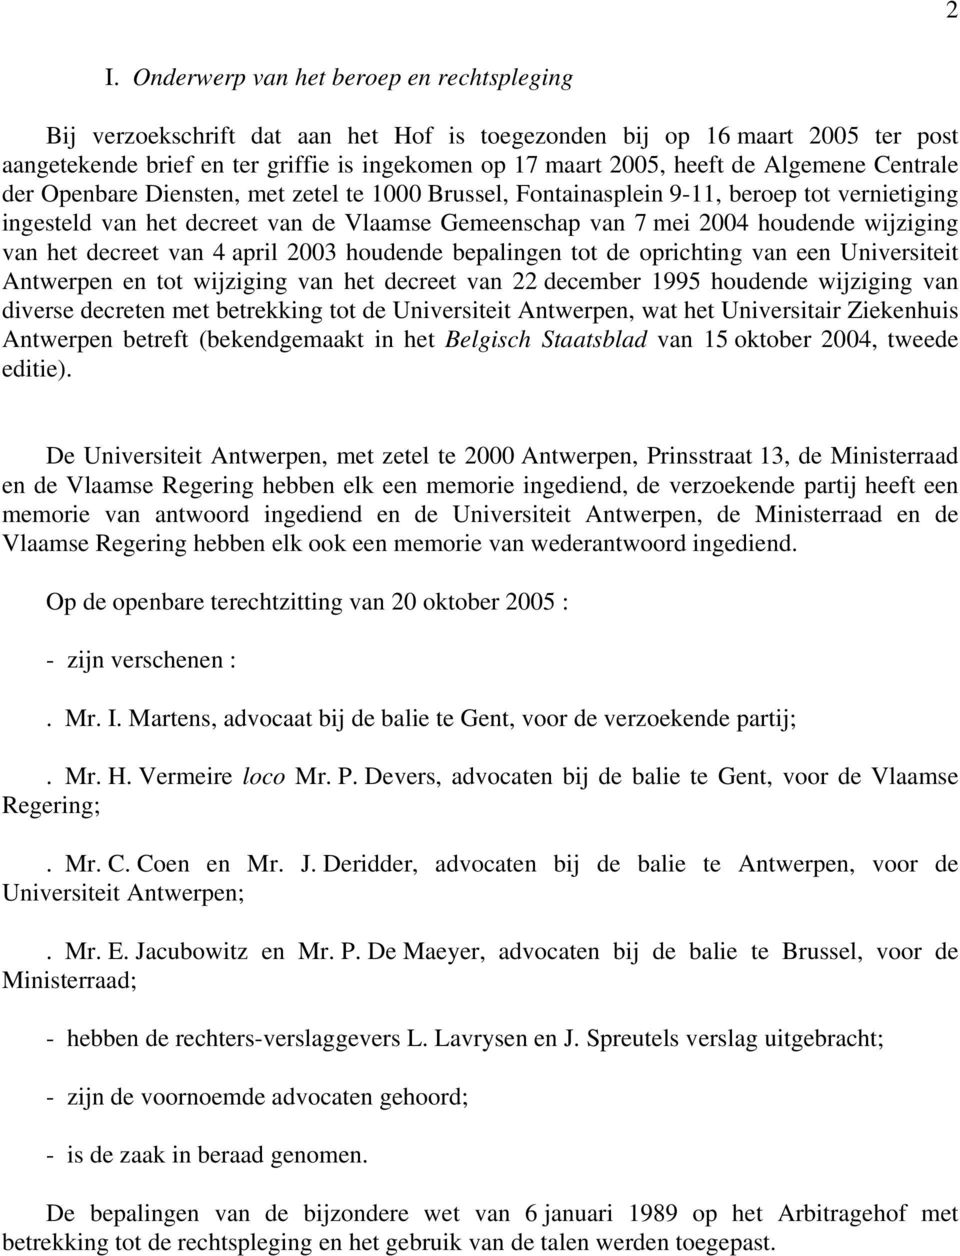 wijziging van het decreet van 4 april 2003 houdende bepalingen tot de oprichting van een Universiteit Antwerpen en tot wijziging van het decreet van 22 december 1995 houdende wijziging van diverse